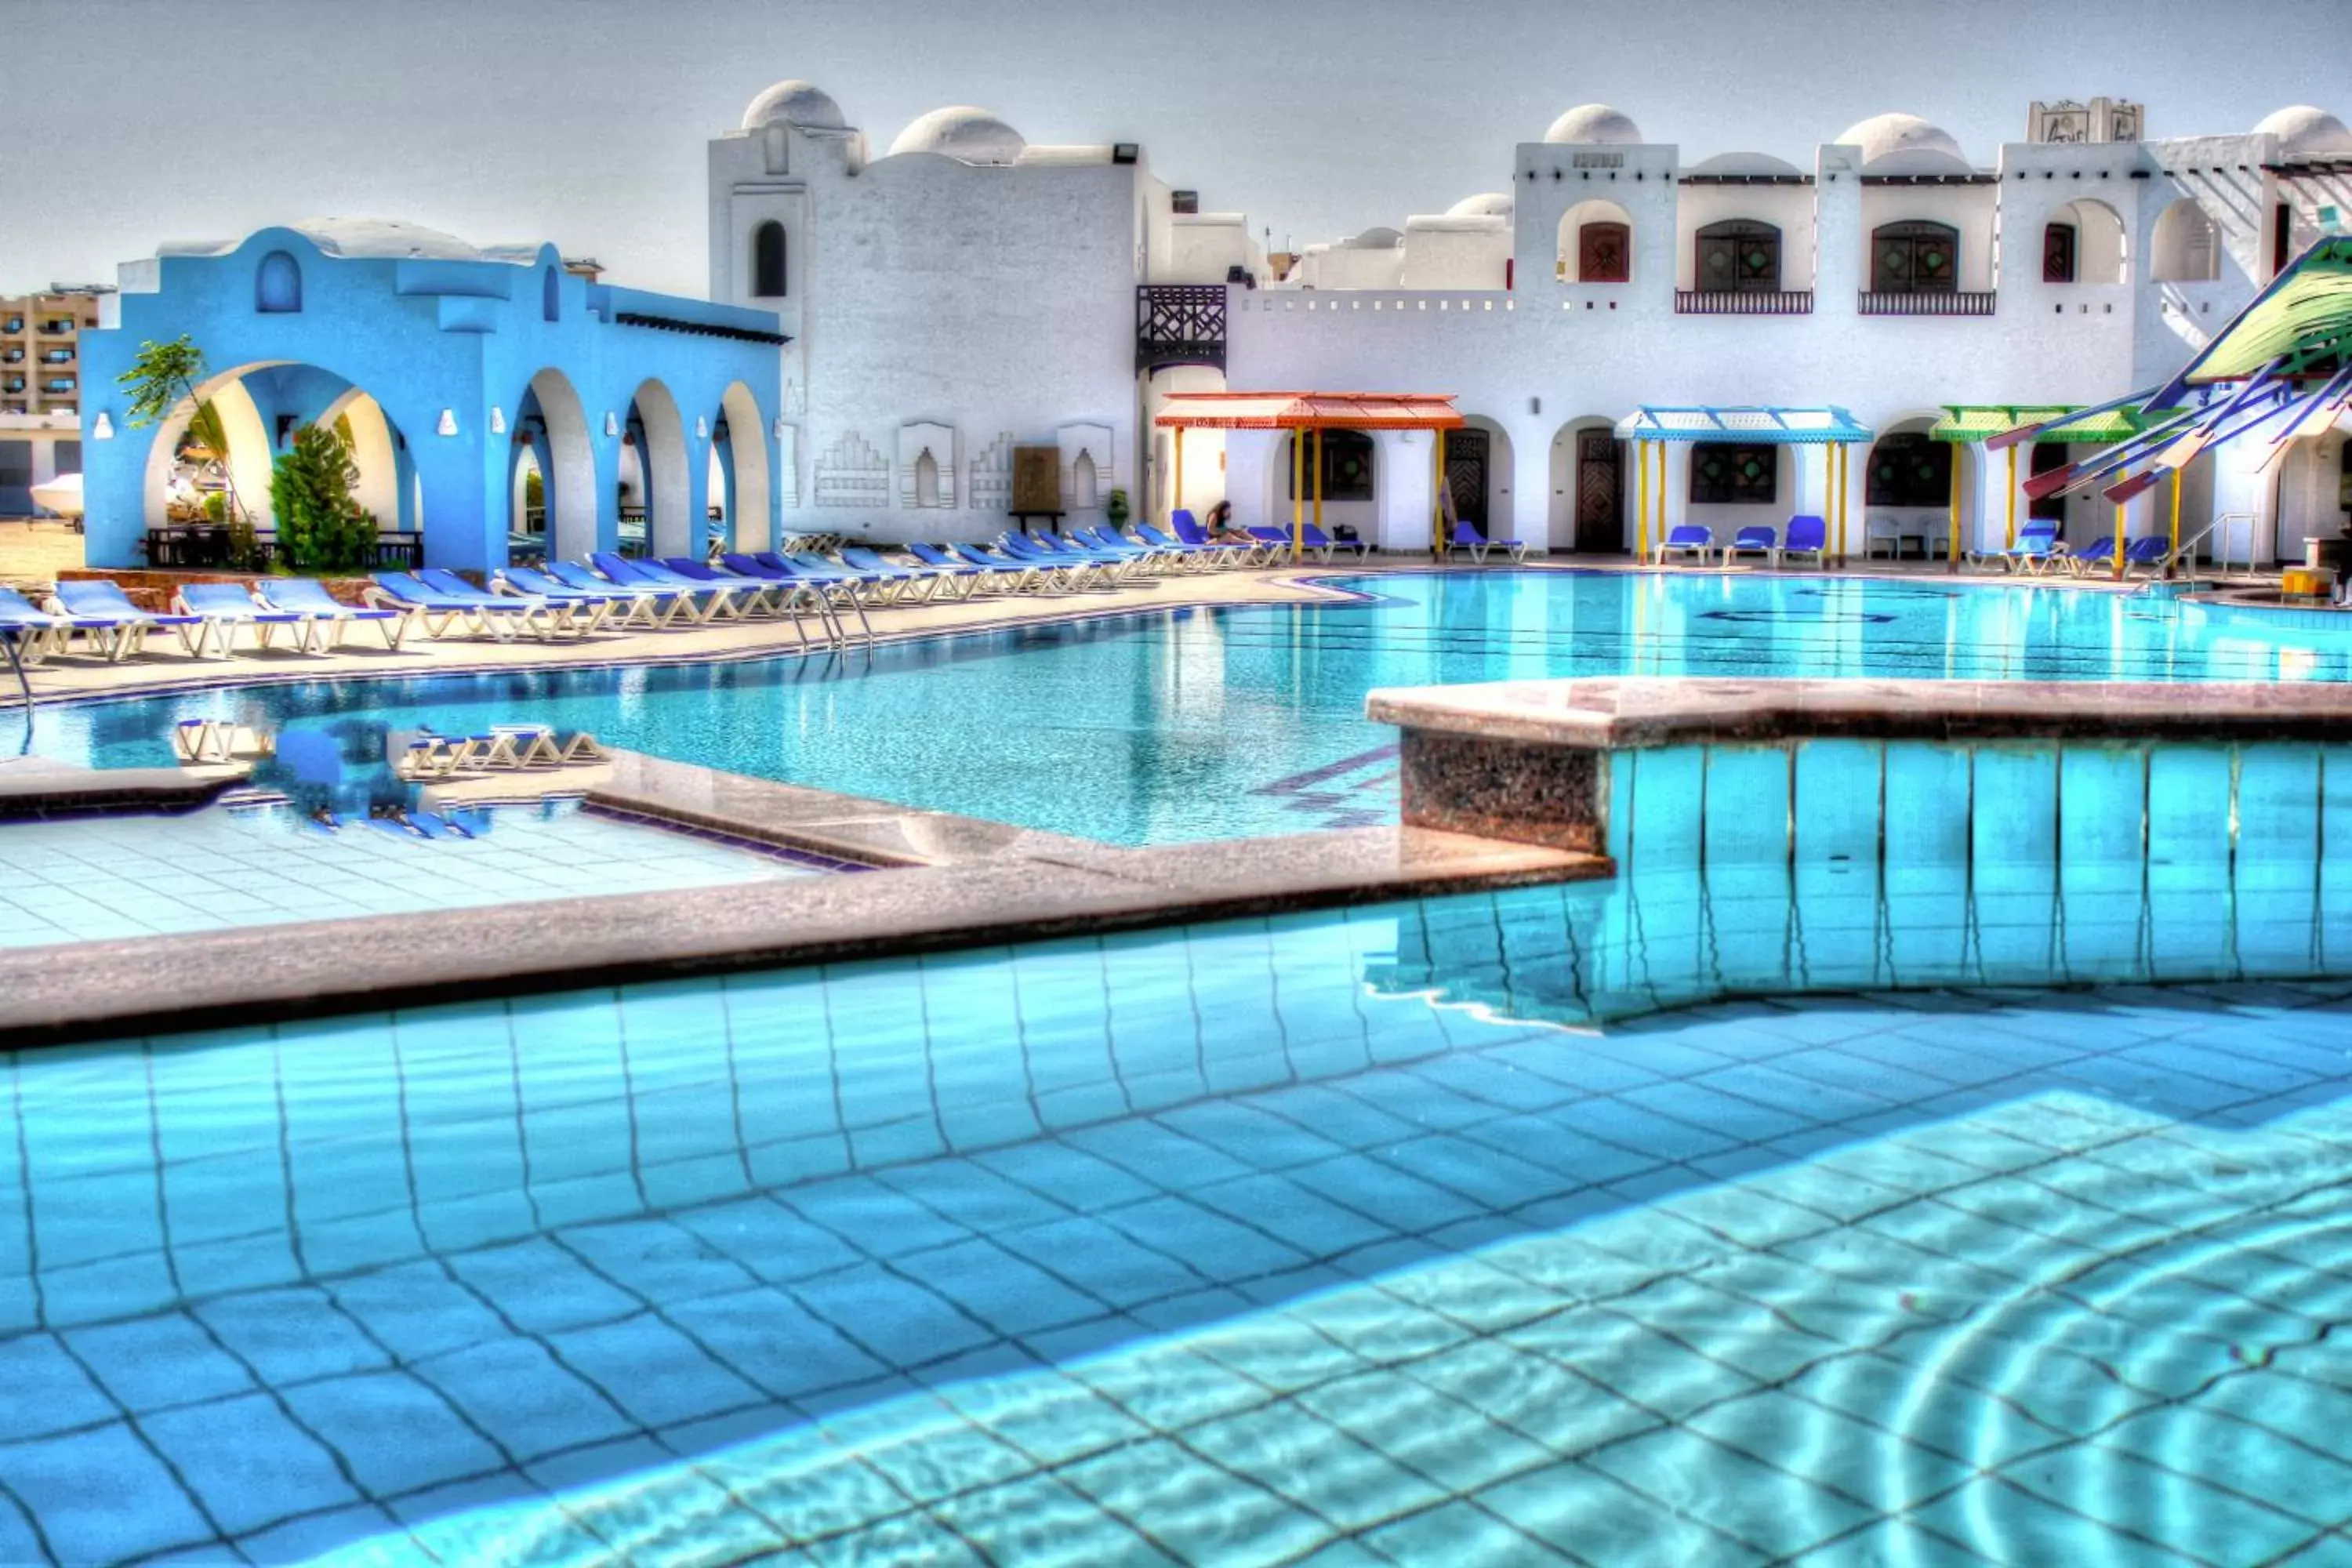 Property building, Swimming Pool in Arabella Azur Resort